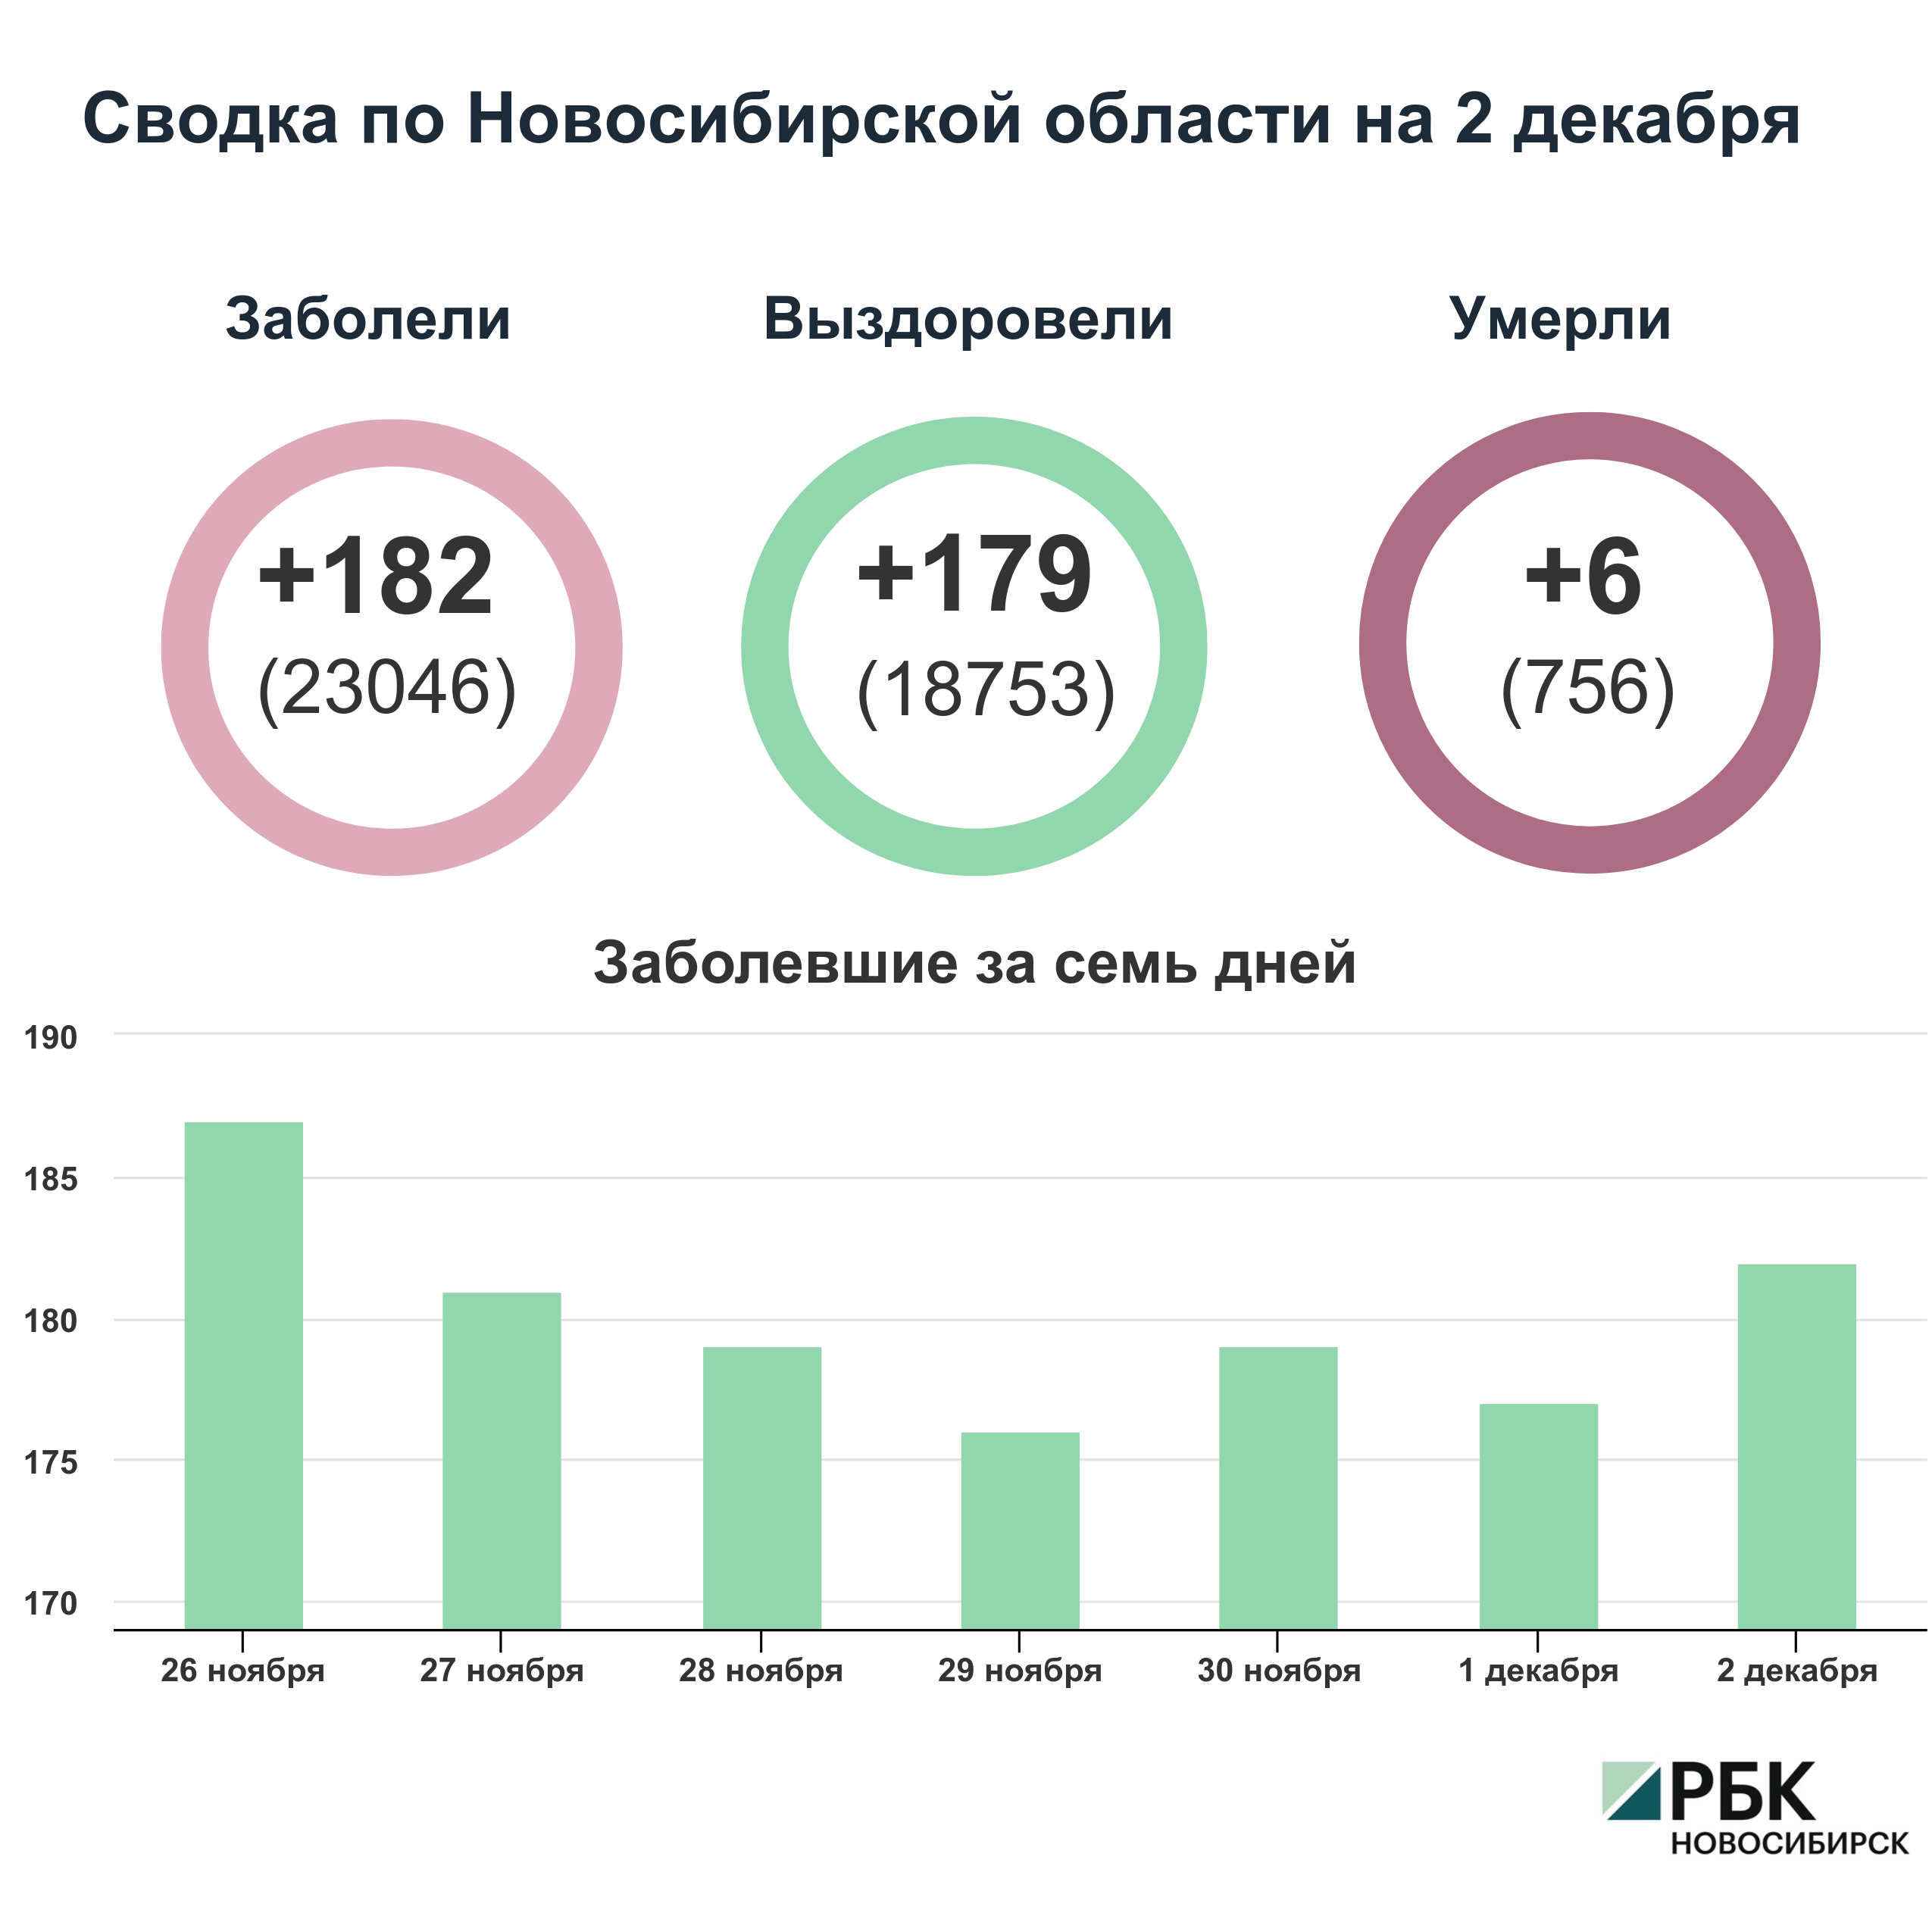 Коронавирус в Новосибирске: сводка на 2 декабря